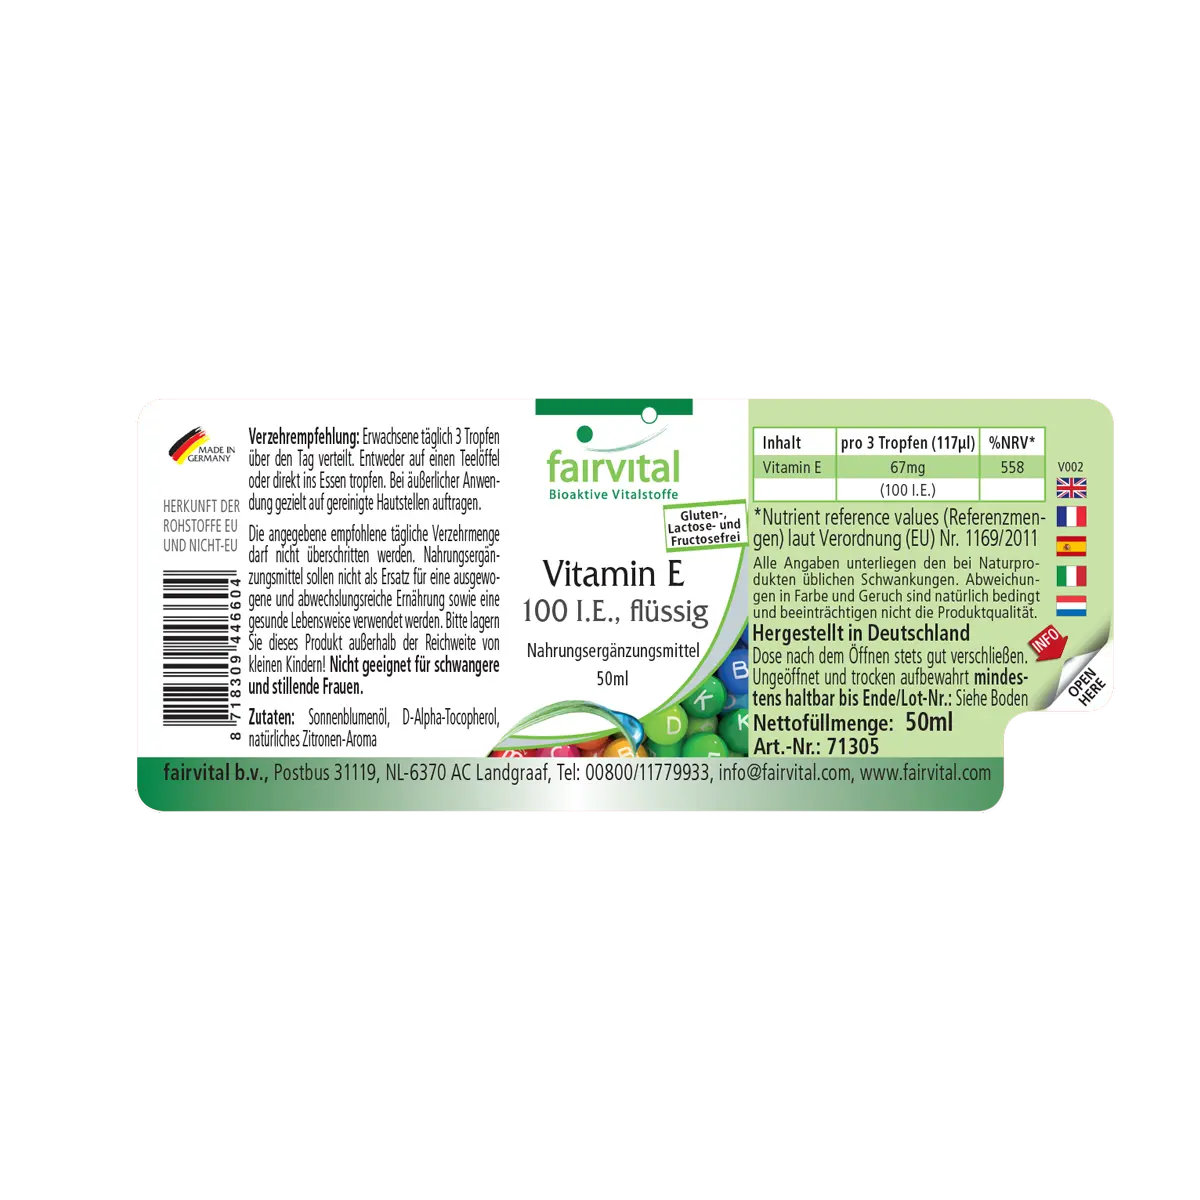 Vitamin E oil 100 I.U. per 3 drops – 50ml